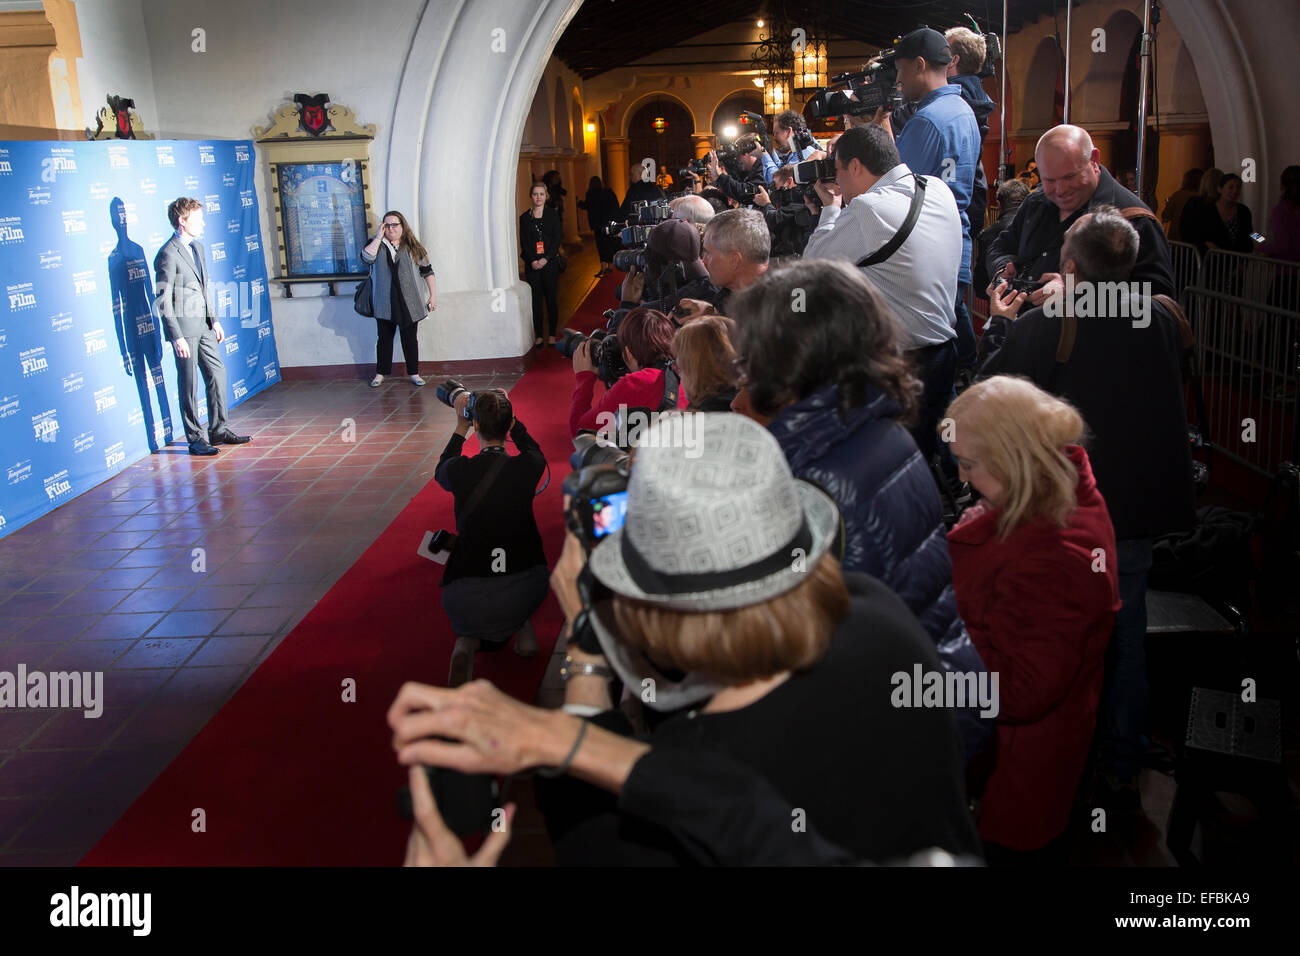 Santa Barbara, Californie, USA. 29 janvier, 2015. Taylor Lautner pose pour des photos sur le tapis rouge lors de la 30e Festival International du Film de Santa Barbara. Crédit : Scott London/Alamy Live News Banque D'Images